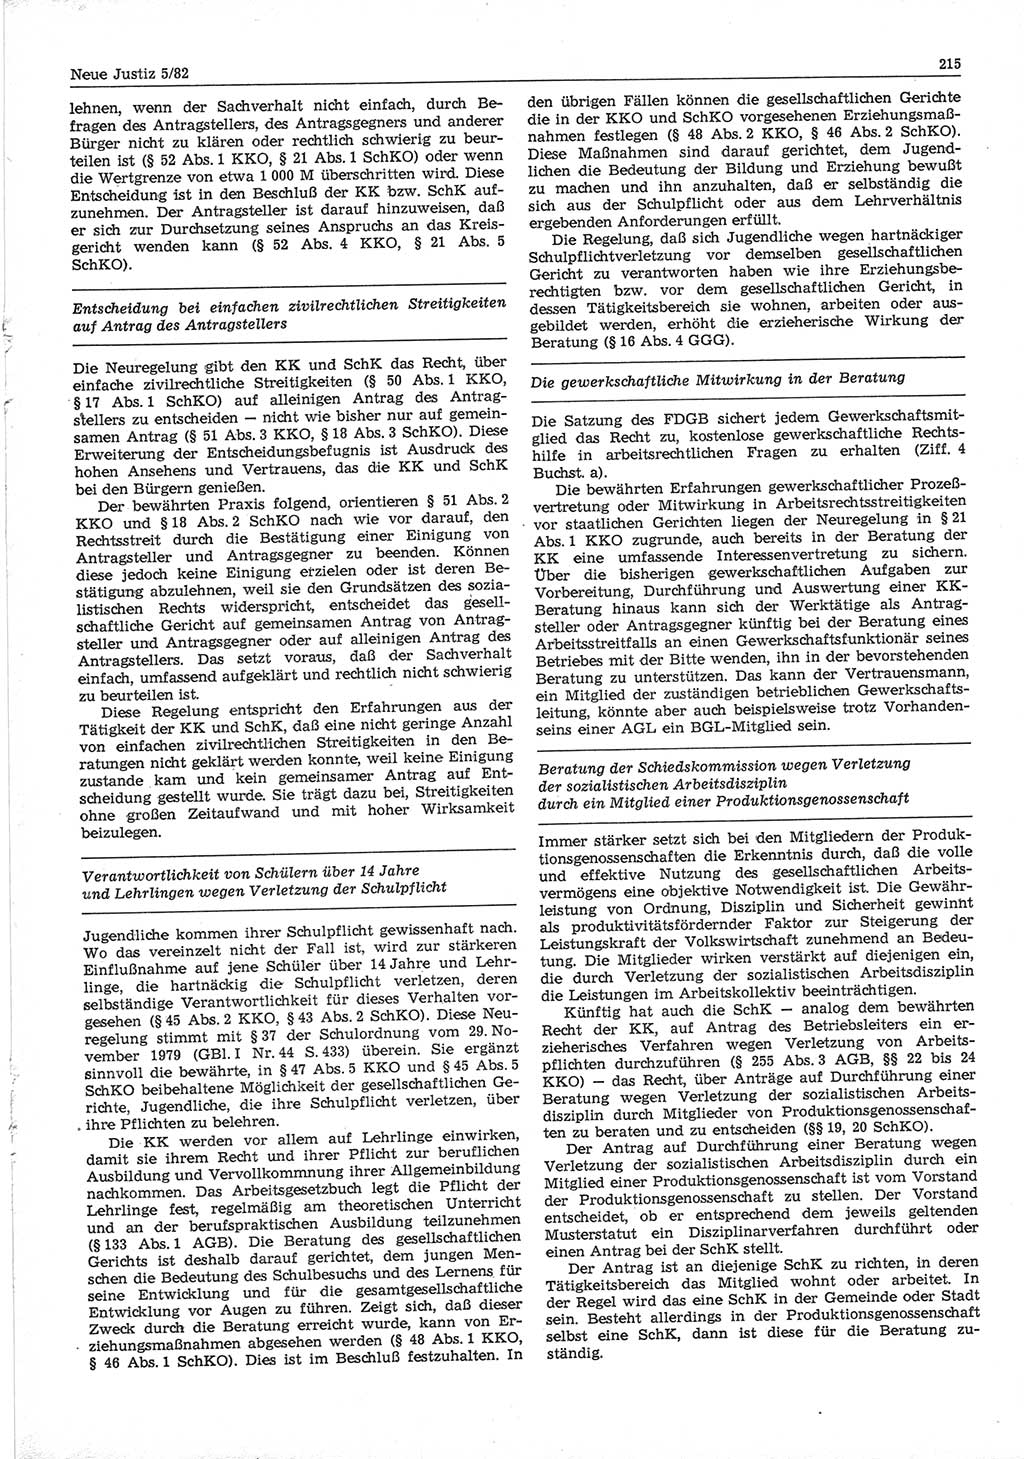 Neue Justiz (NJ), Zeitschrift für sozialistisches Recht und Gesetzlichkeit [Deutsche Demokratische Republik (DDR)], 36. Jahrgang 1982, Seite 215 (NJ DDR 1982, S. 215)